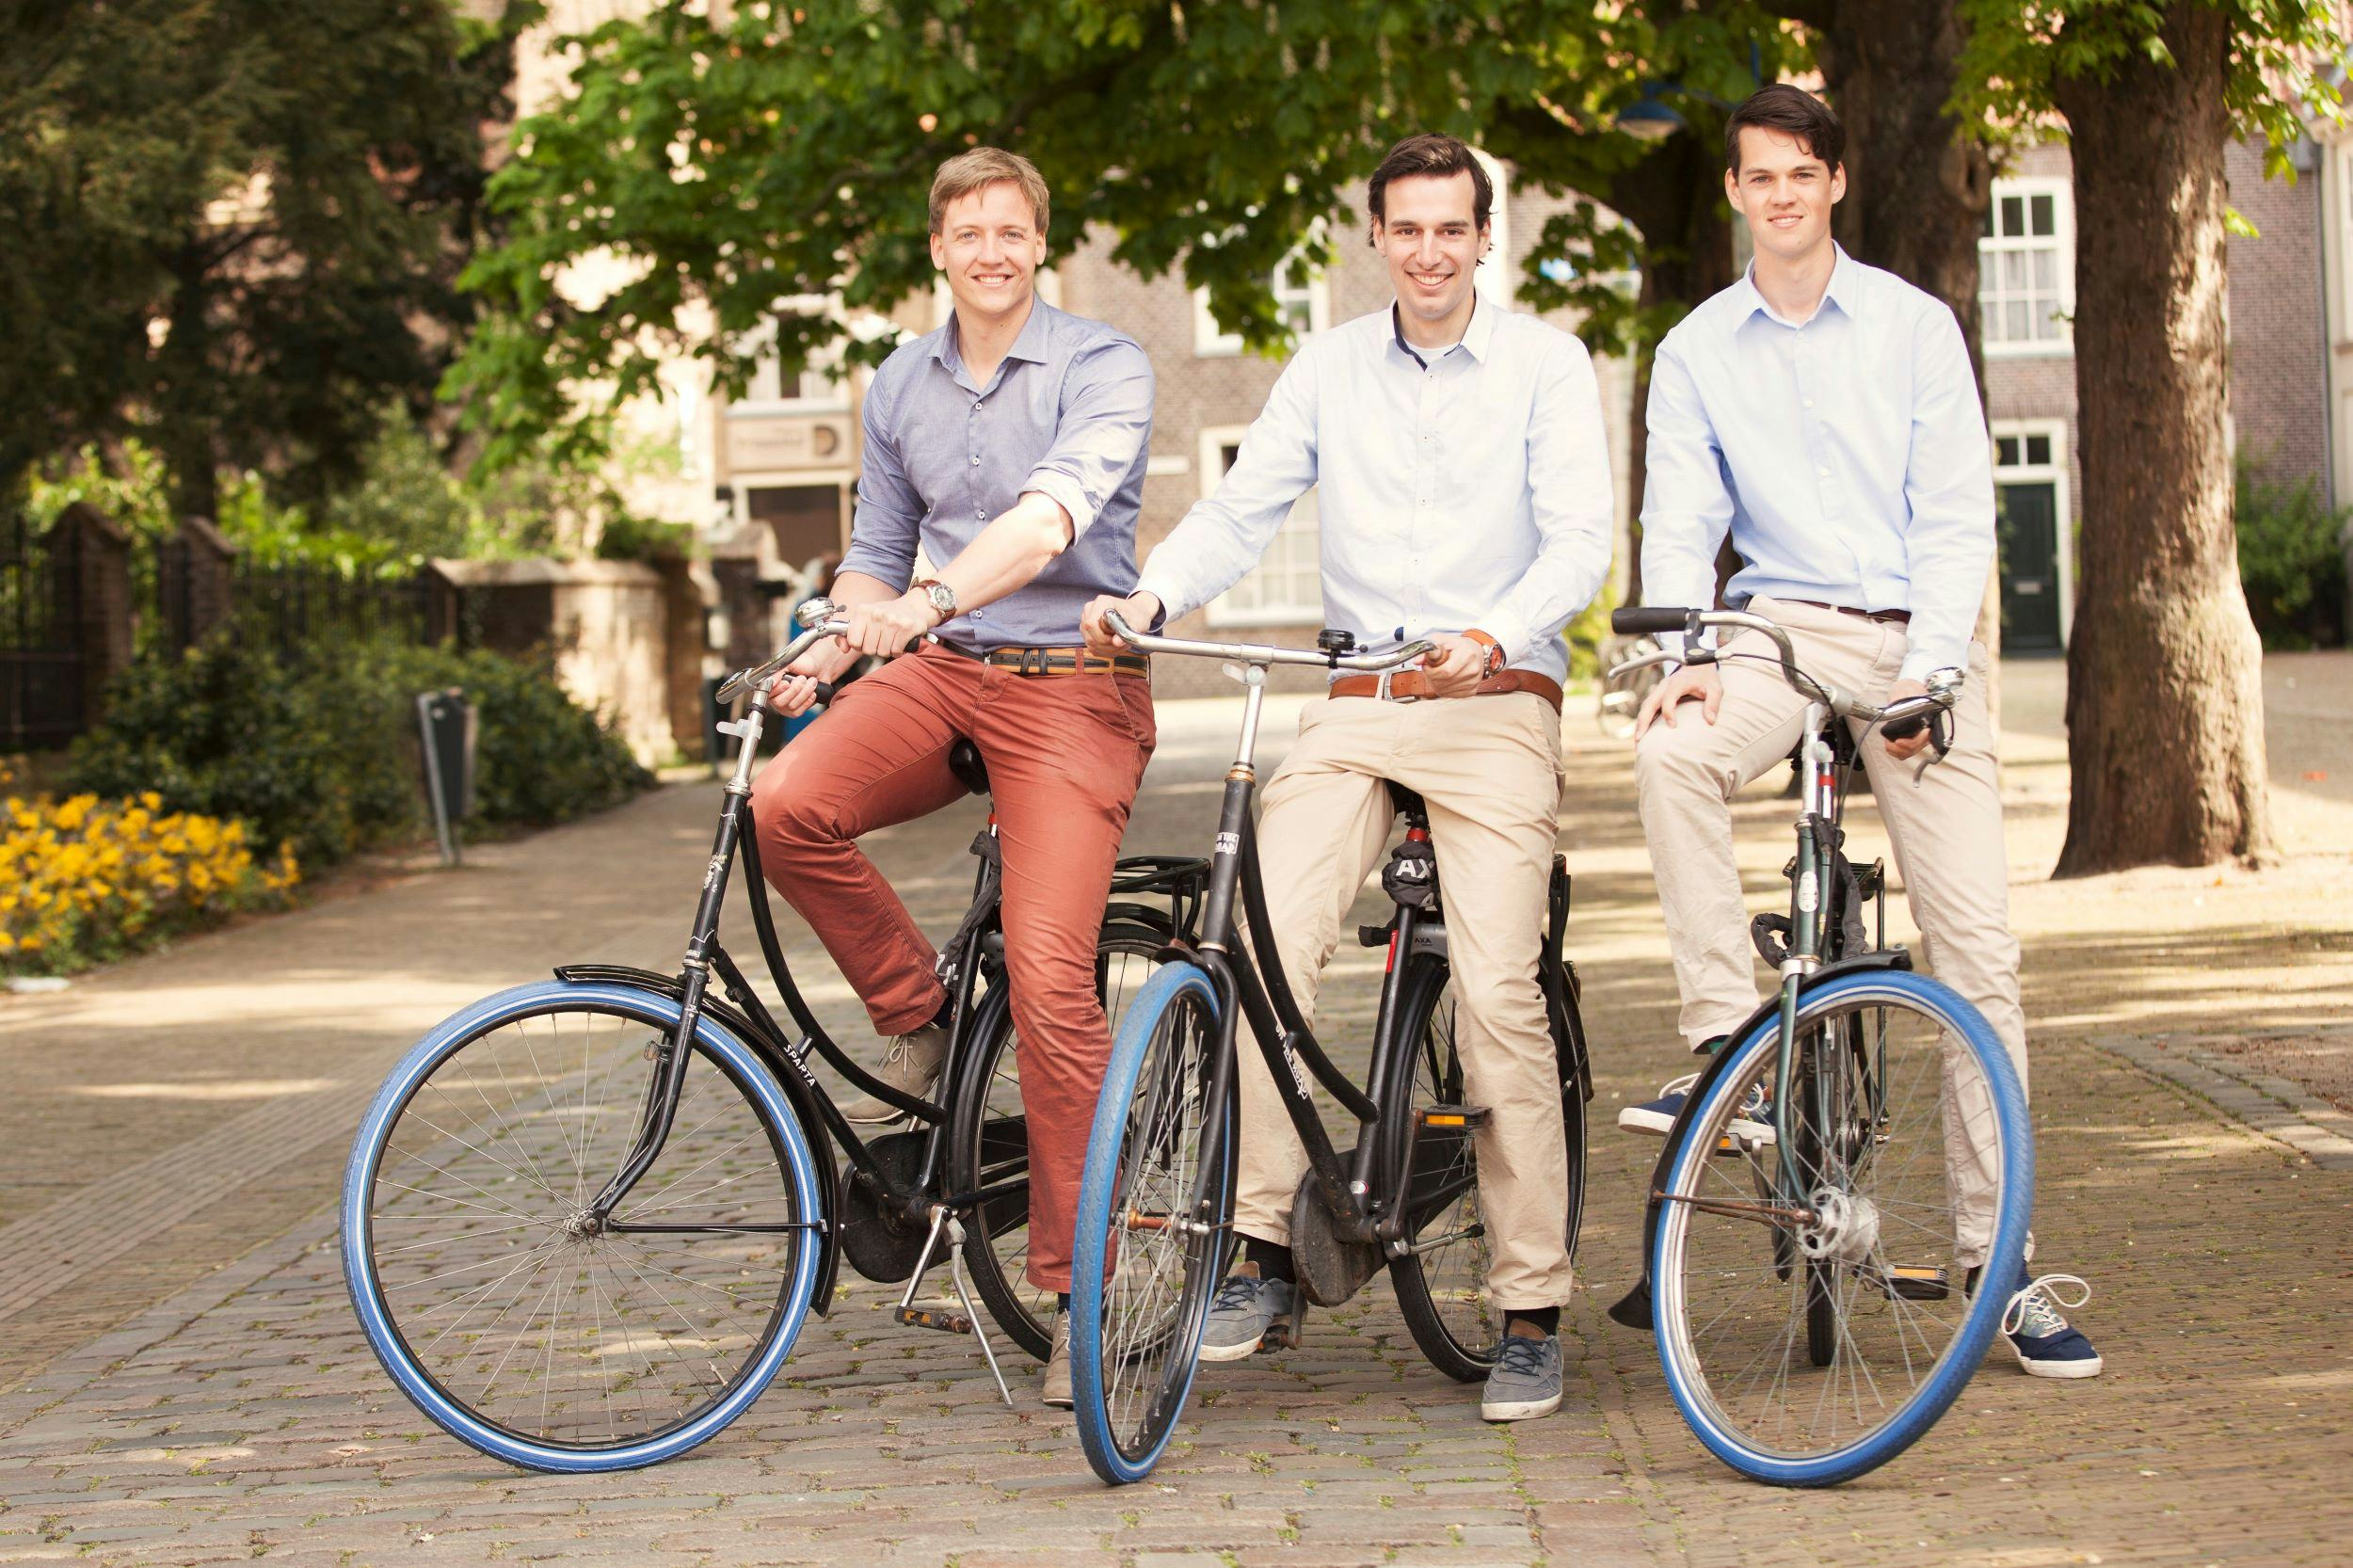 From left to right, the founders of Swapfiets: Dirk de Bruijn, Martijn Obers & Richard Burger. - Photo Swapfiets 